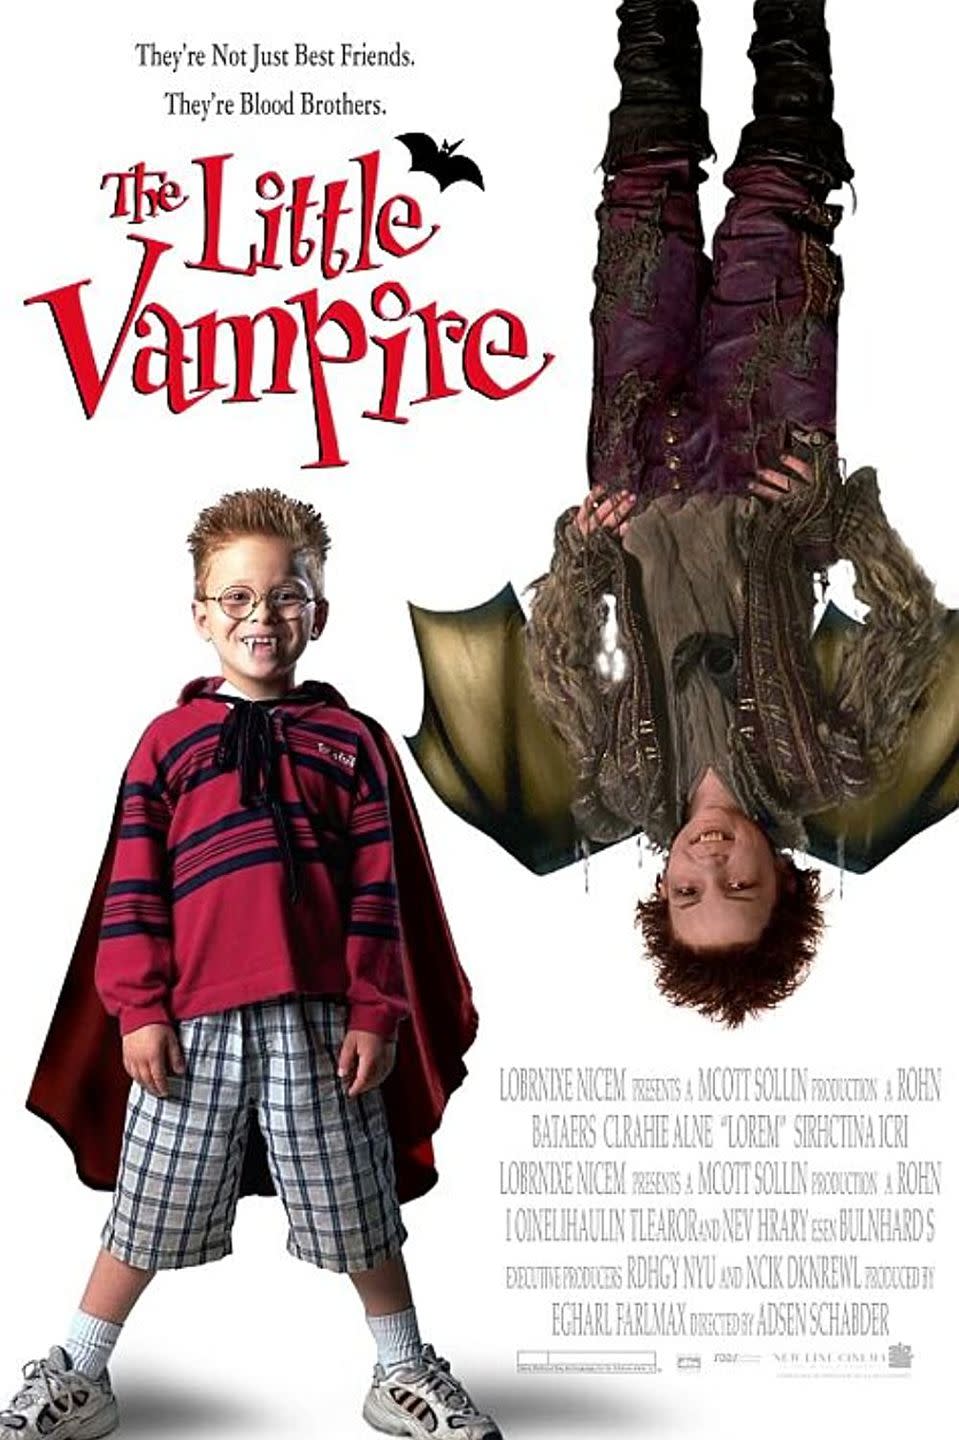 13) The Little Vampire